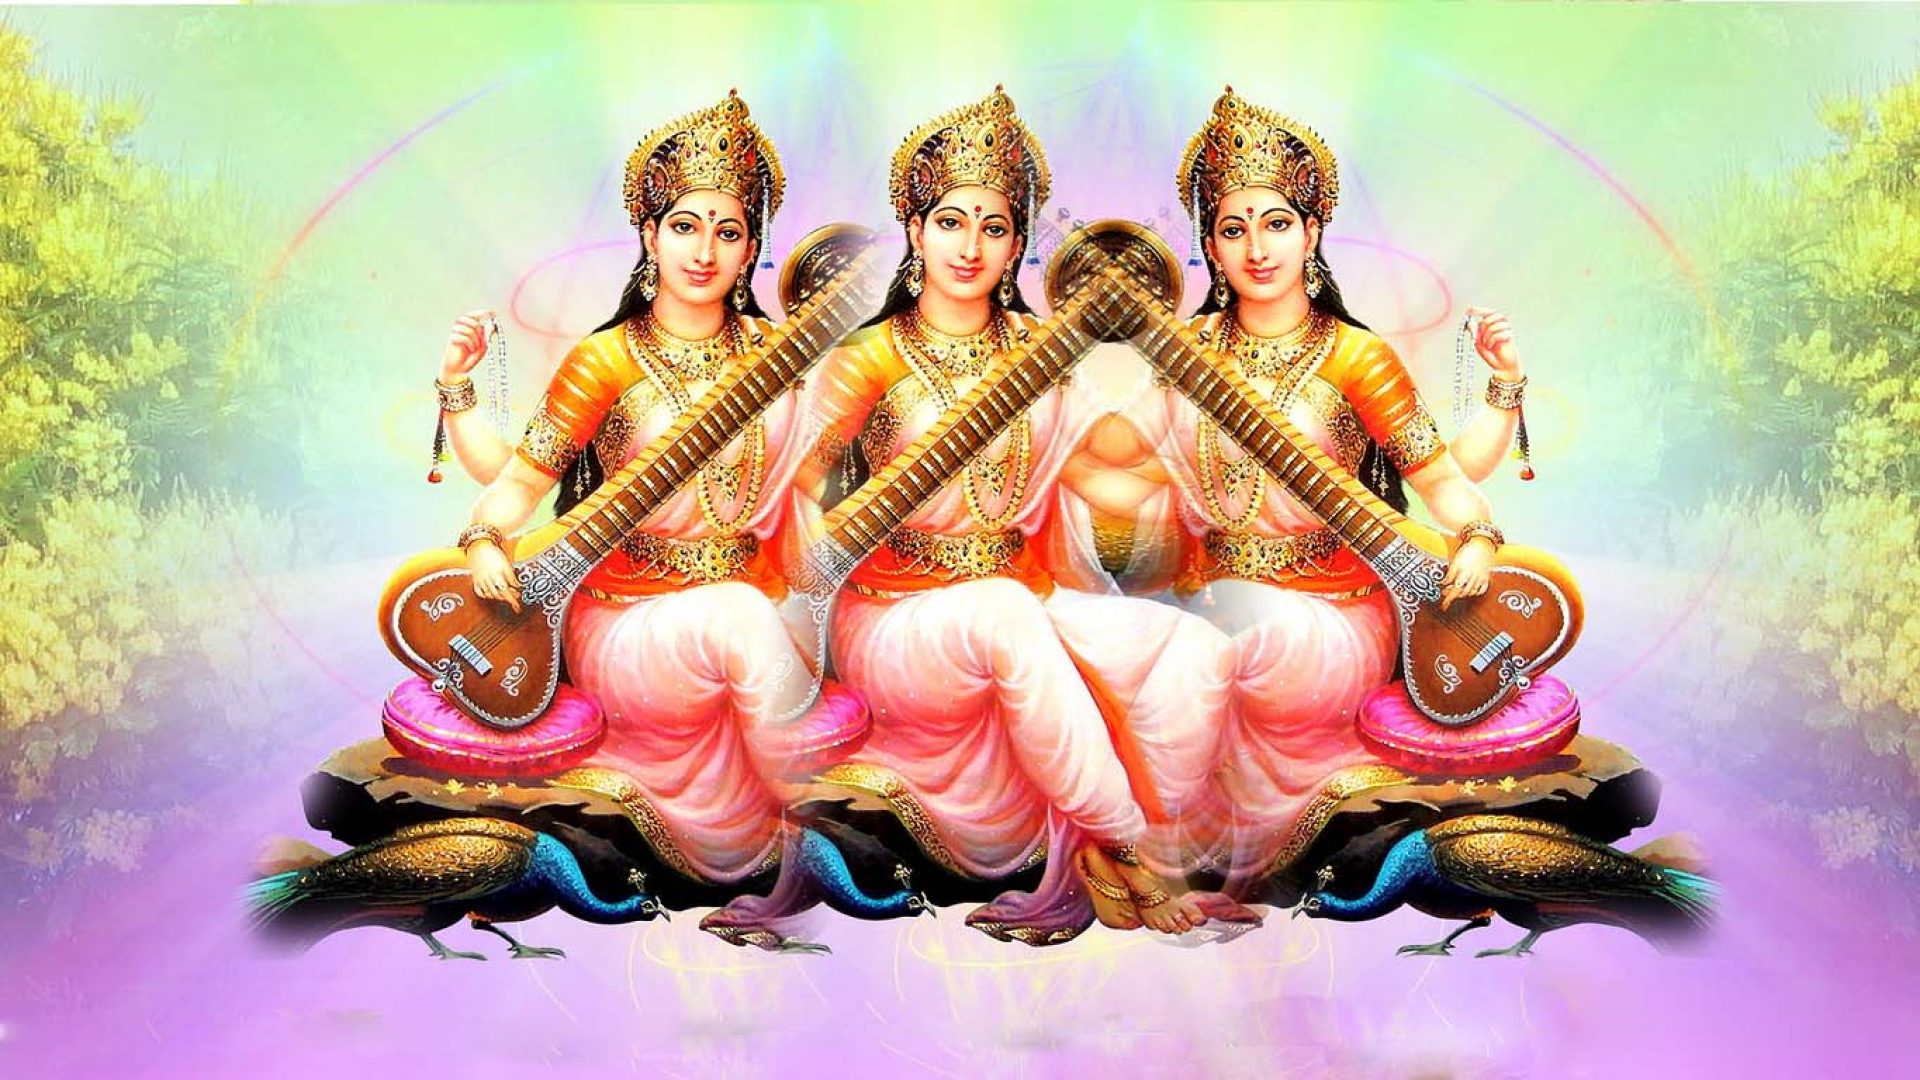 Goddess Saraswati Wallpapers For Desktop | Hindu Gods and ...